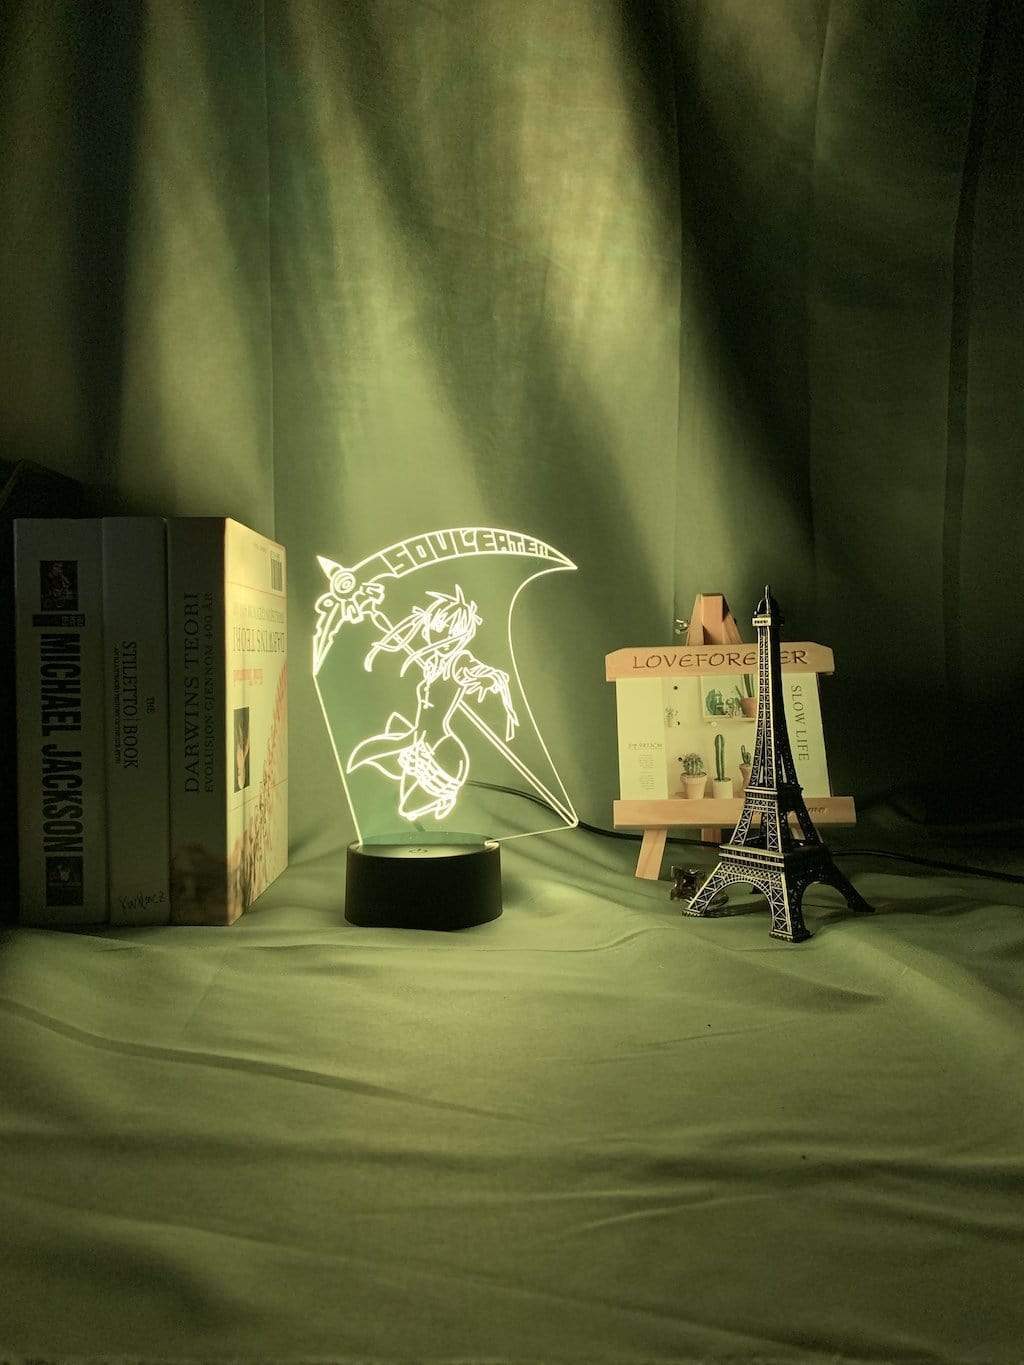 Lampe Soul Eater Maka Albarn Figure Kids Led Night Light lampe led 3D